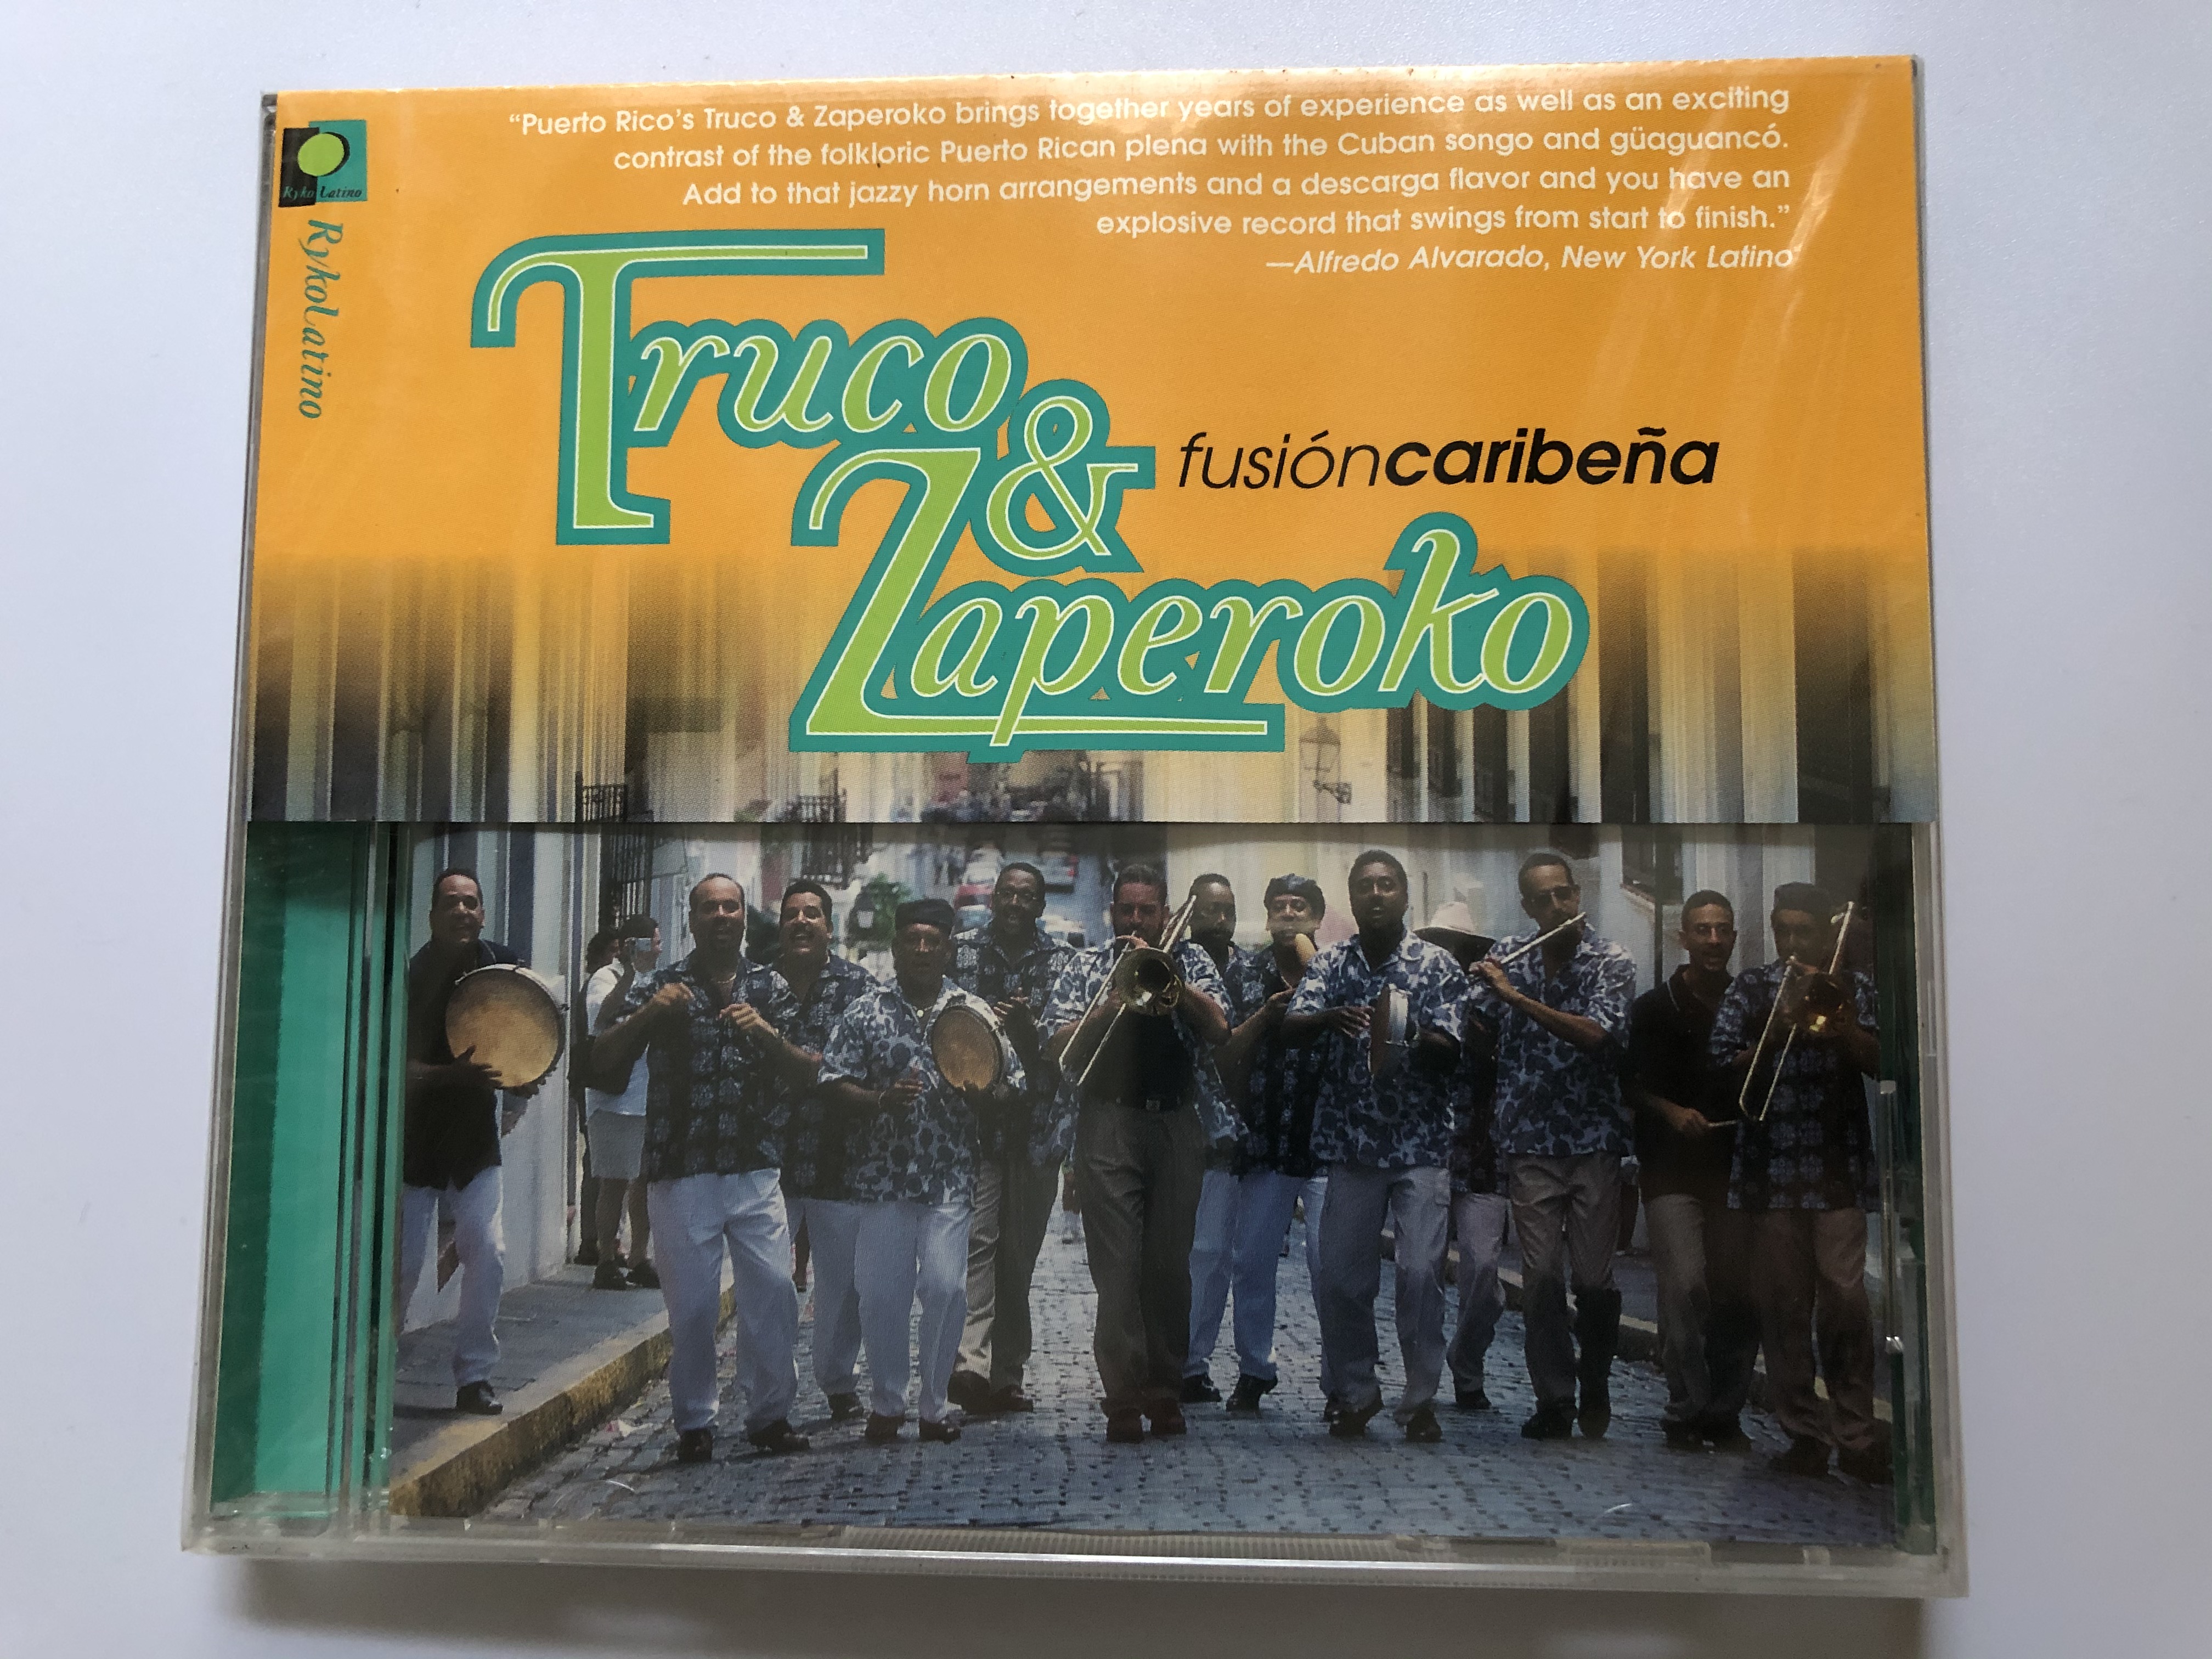 truco-zaperoko-fusi-n-caribe-a-ryko-latino-audio-cd-1999-rlcd-1013-1-.jpg